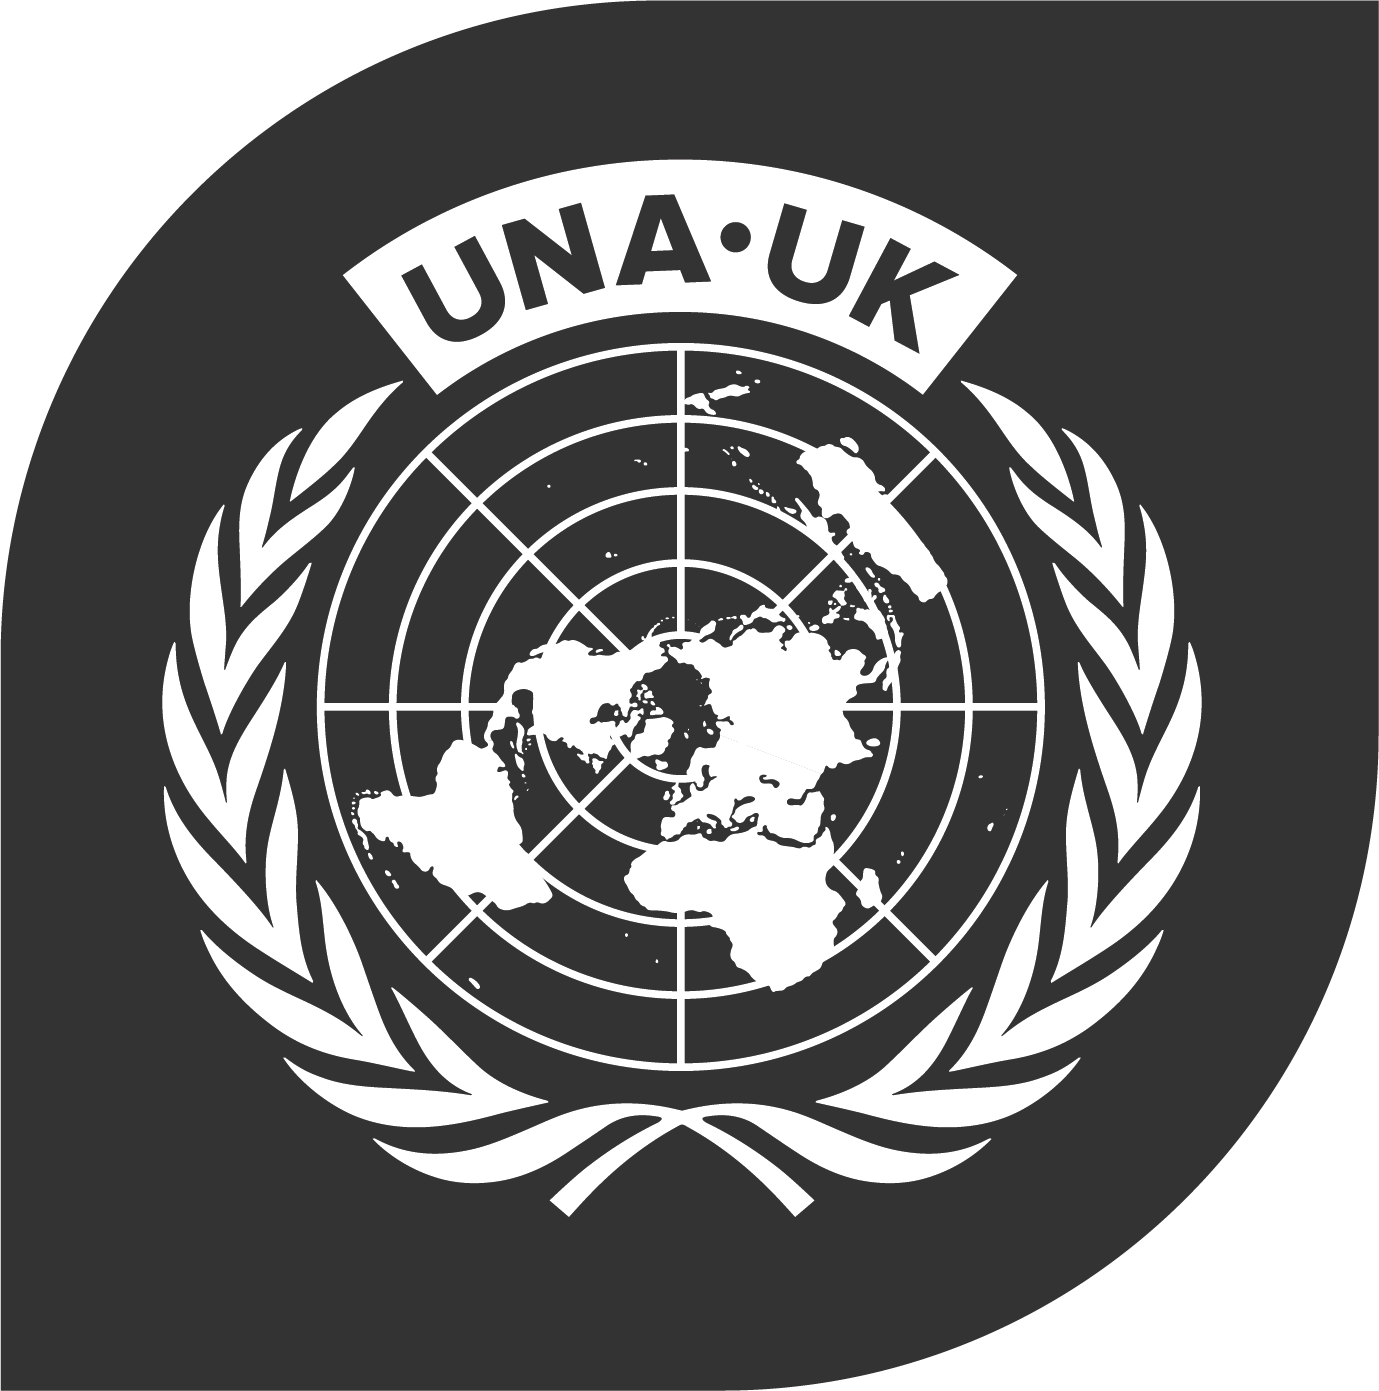 UNA-UK logo